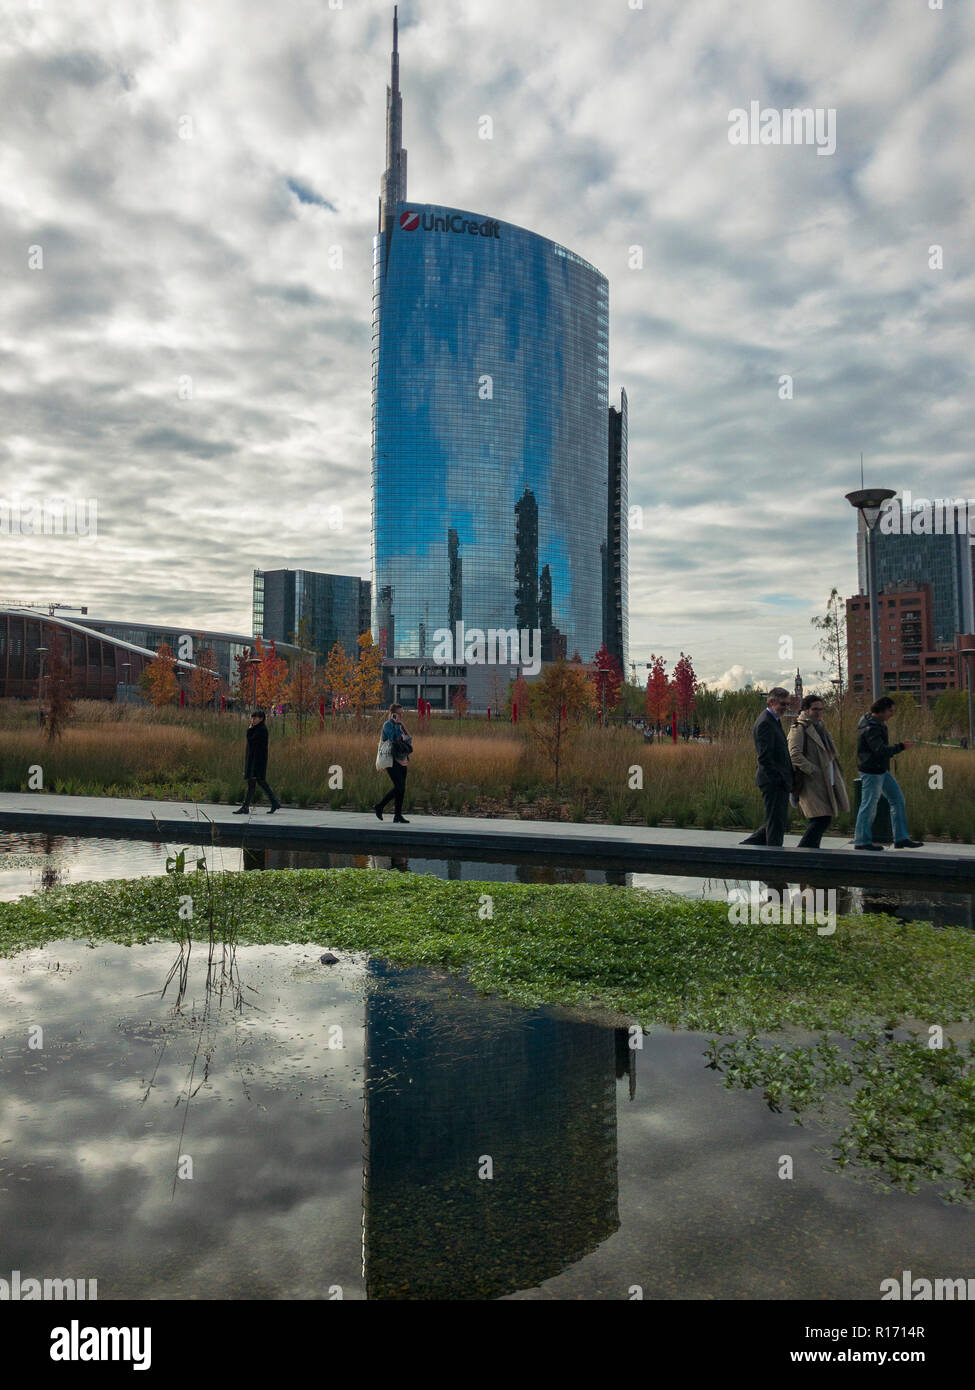 Bibliothèque d'arbres, nouveau parc de Milan. Tour d'Unicredit. Allées du parc avec vue panoramique. L'Italie. Gratte-ciel en miroir dans la fontaine Banque D'Images